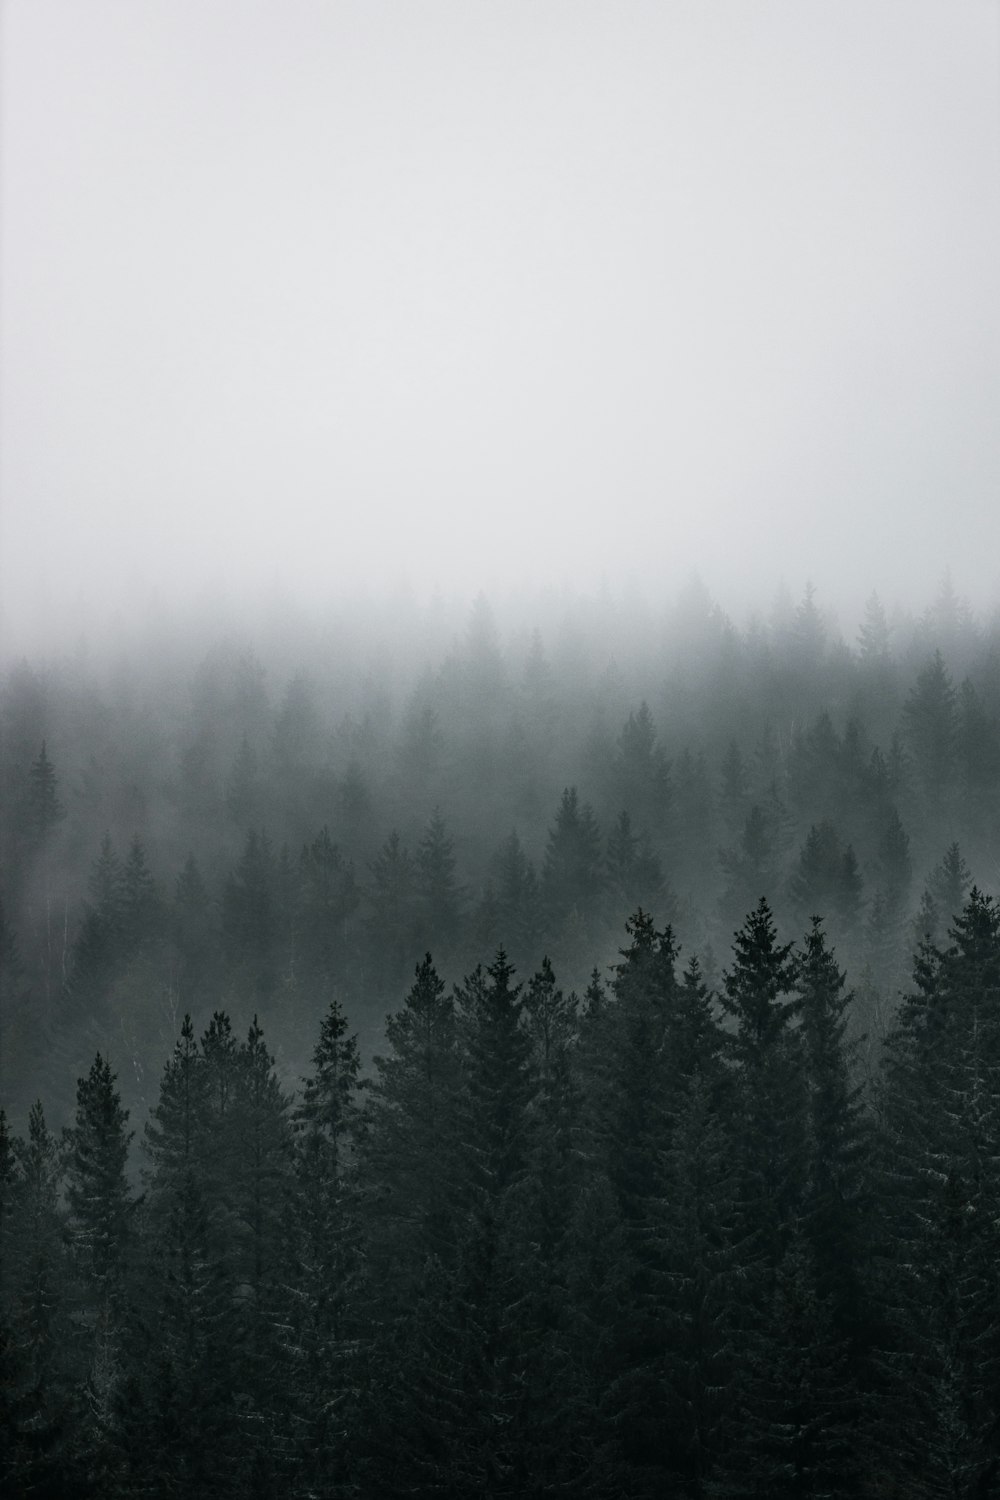 霧に覆われた緑の松の木